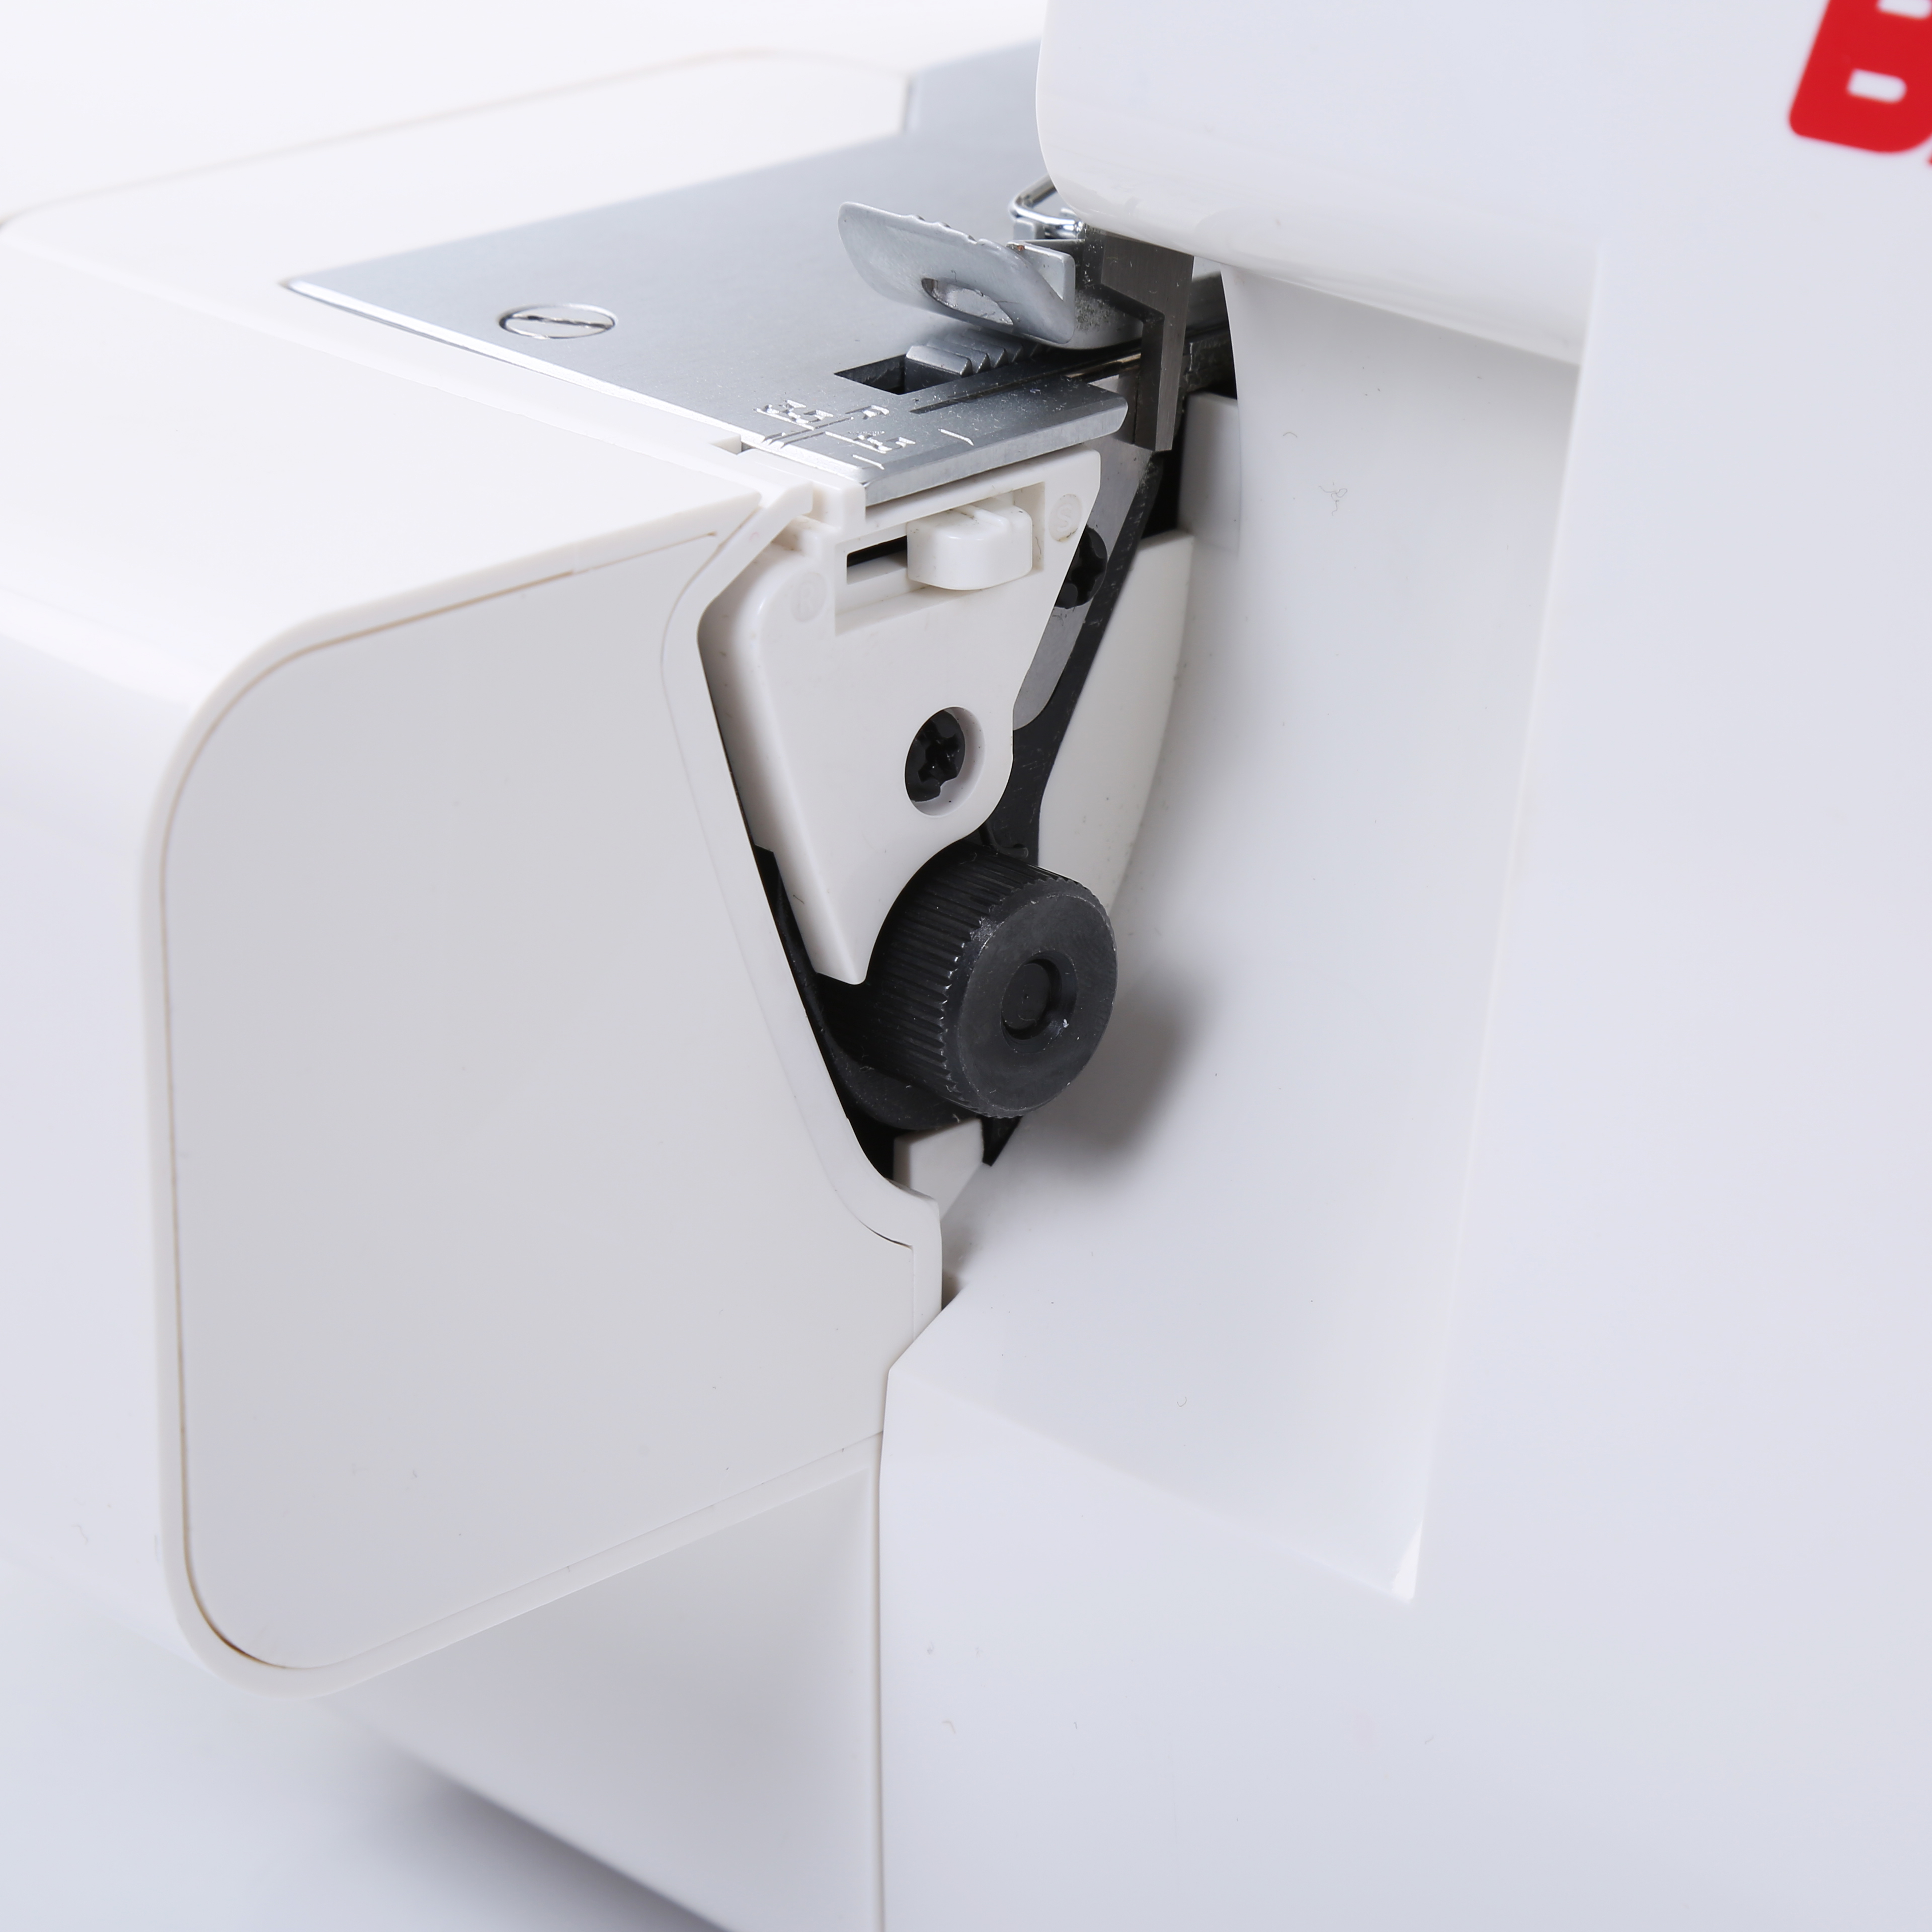 Máquina de coser Overlock Overlock de Bai Gemsy para la máquina de coser Overlock de segunda mano